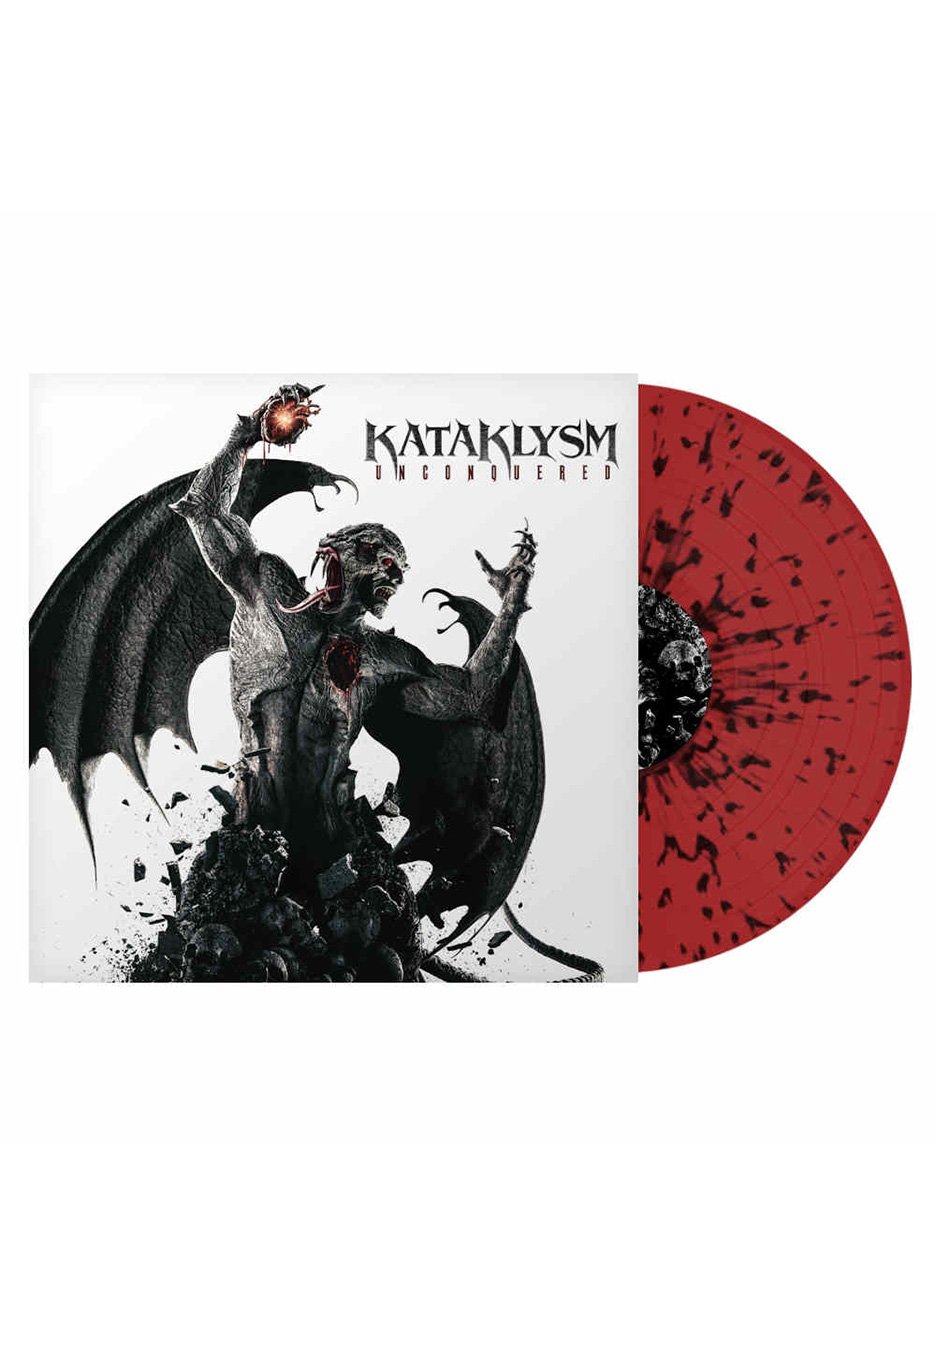 Kataklysm - Unconquered Ltd. Red & Black - Splattered Vinyl